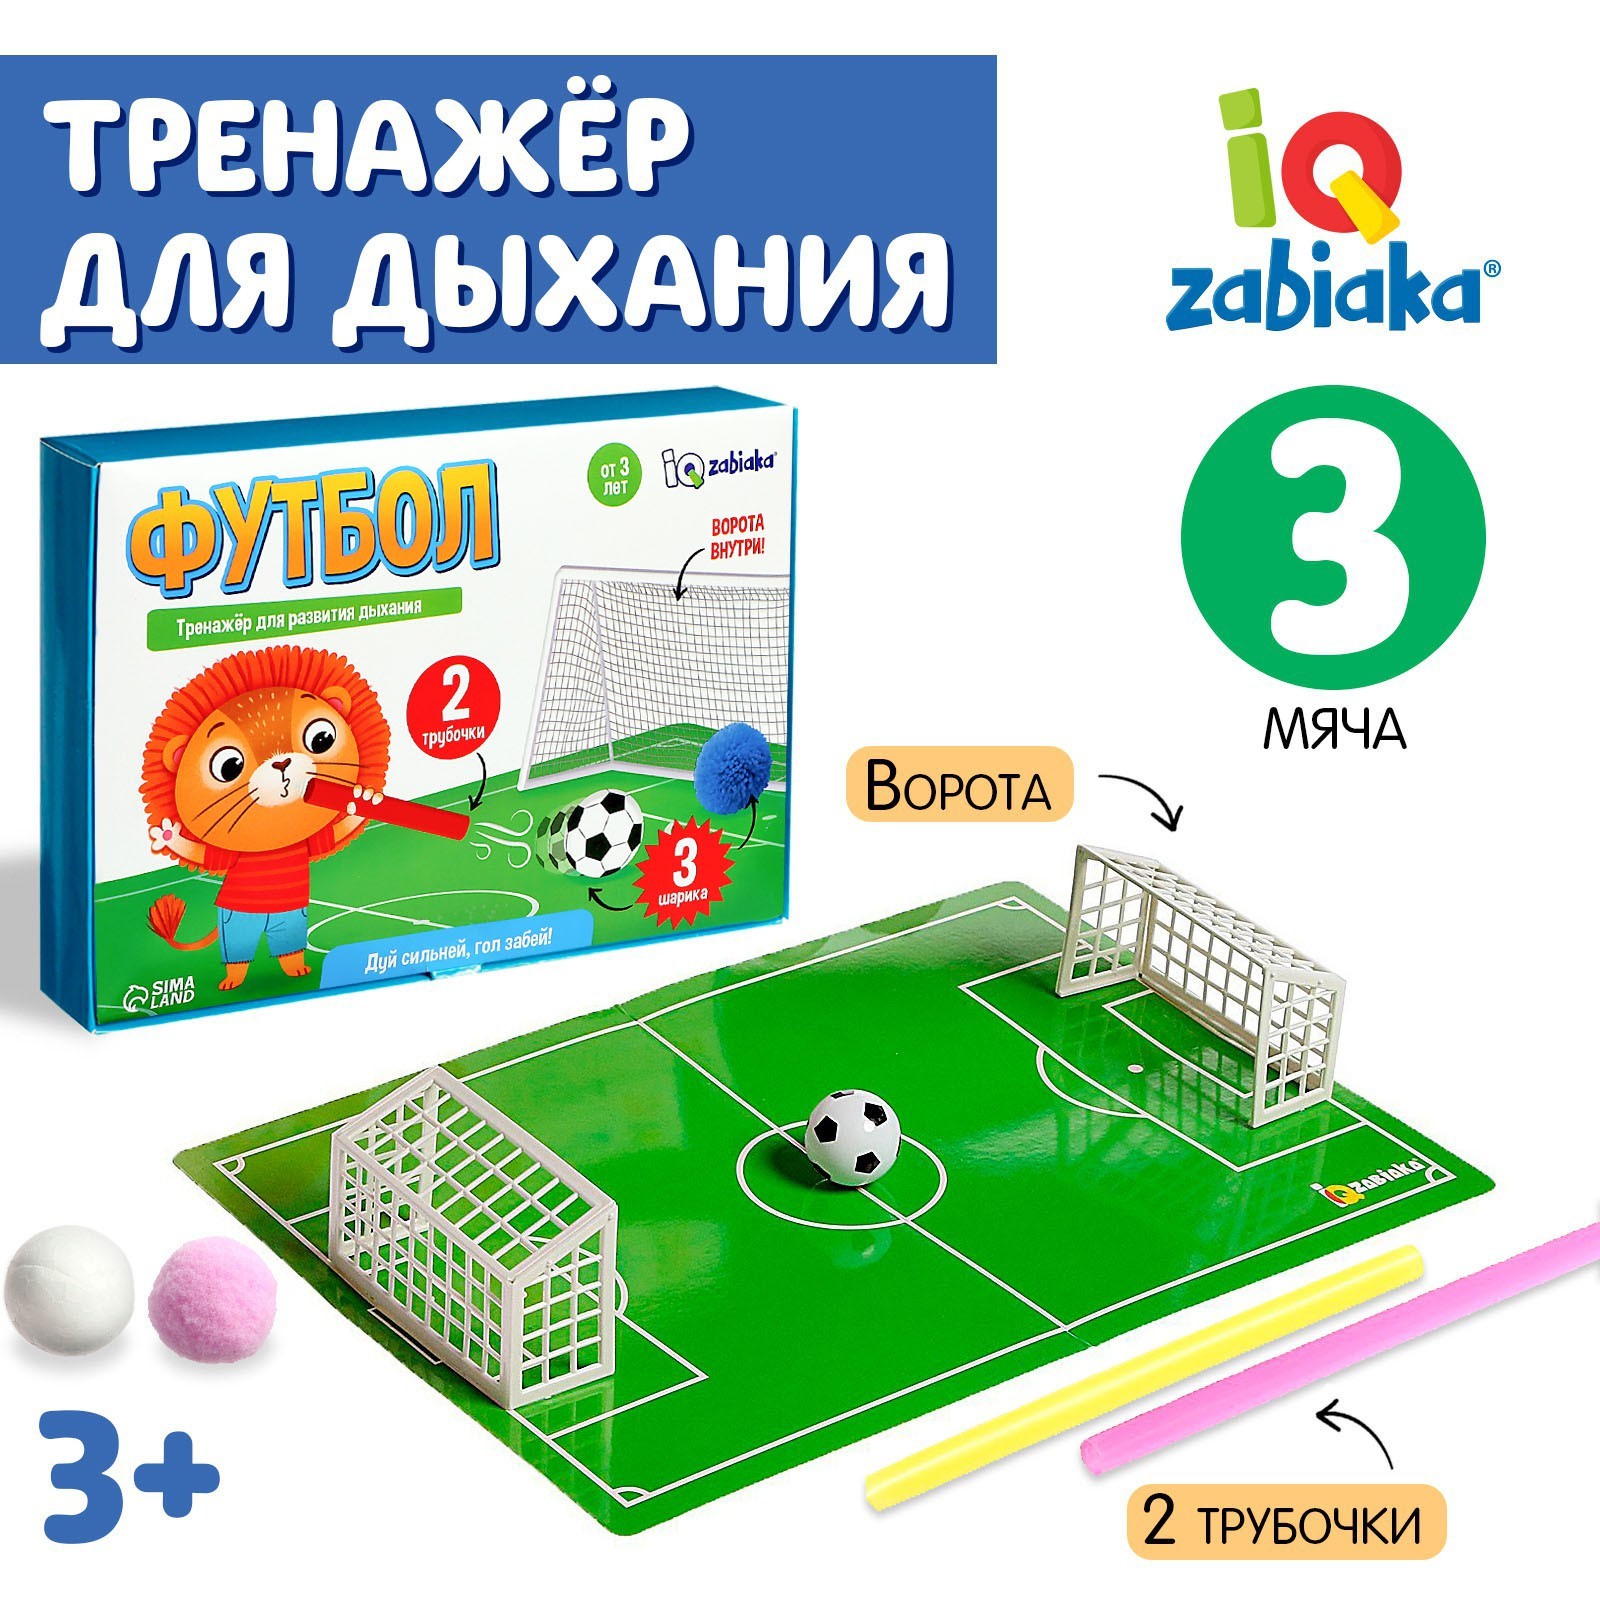 Тренажёр для развития дыхания «Футбол» (6116410) - Купить по цене от 219.00  руб. | Интернет магазин SIMA-LAND.RU